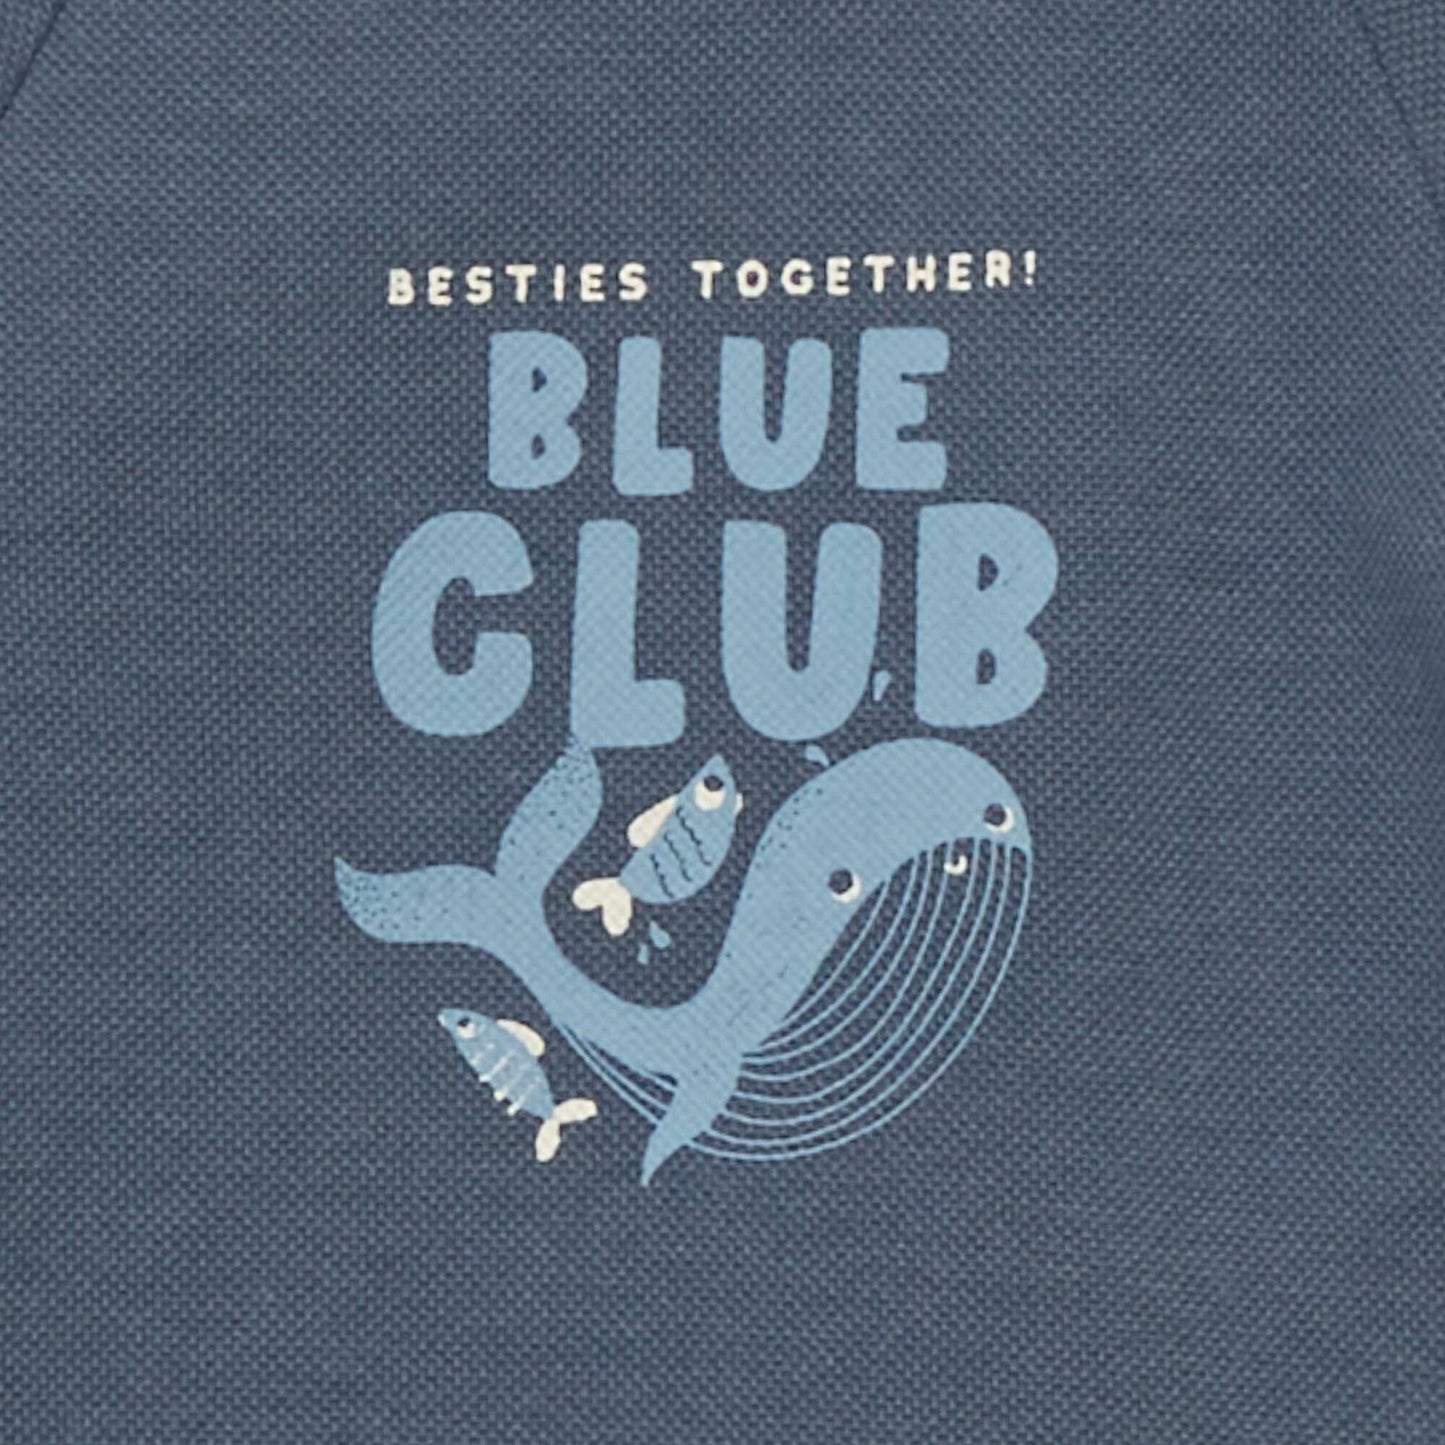 Piqué knit 'whale' print sweater BLUE